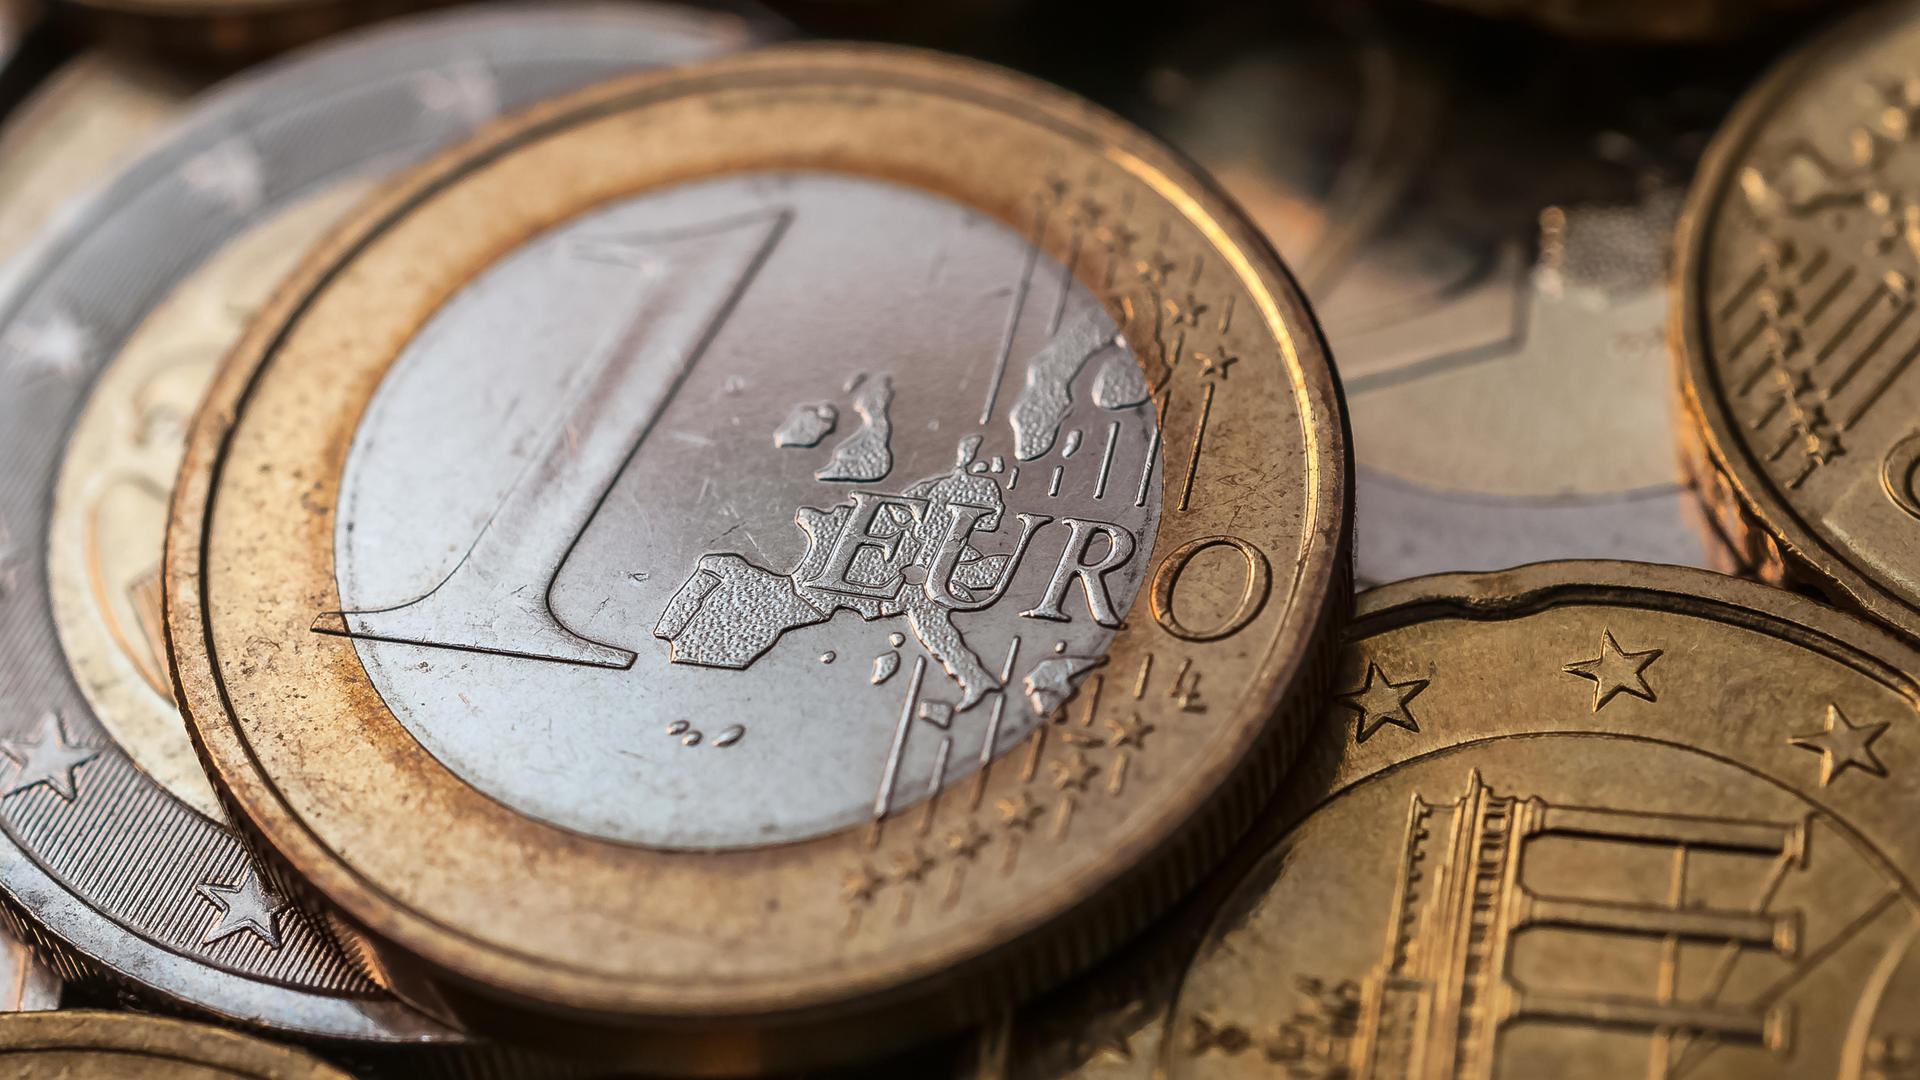 Silberne und kupferfarbene Euro-Münzen liegen auf- und nebeneinander.